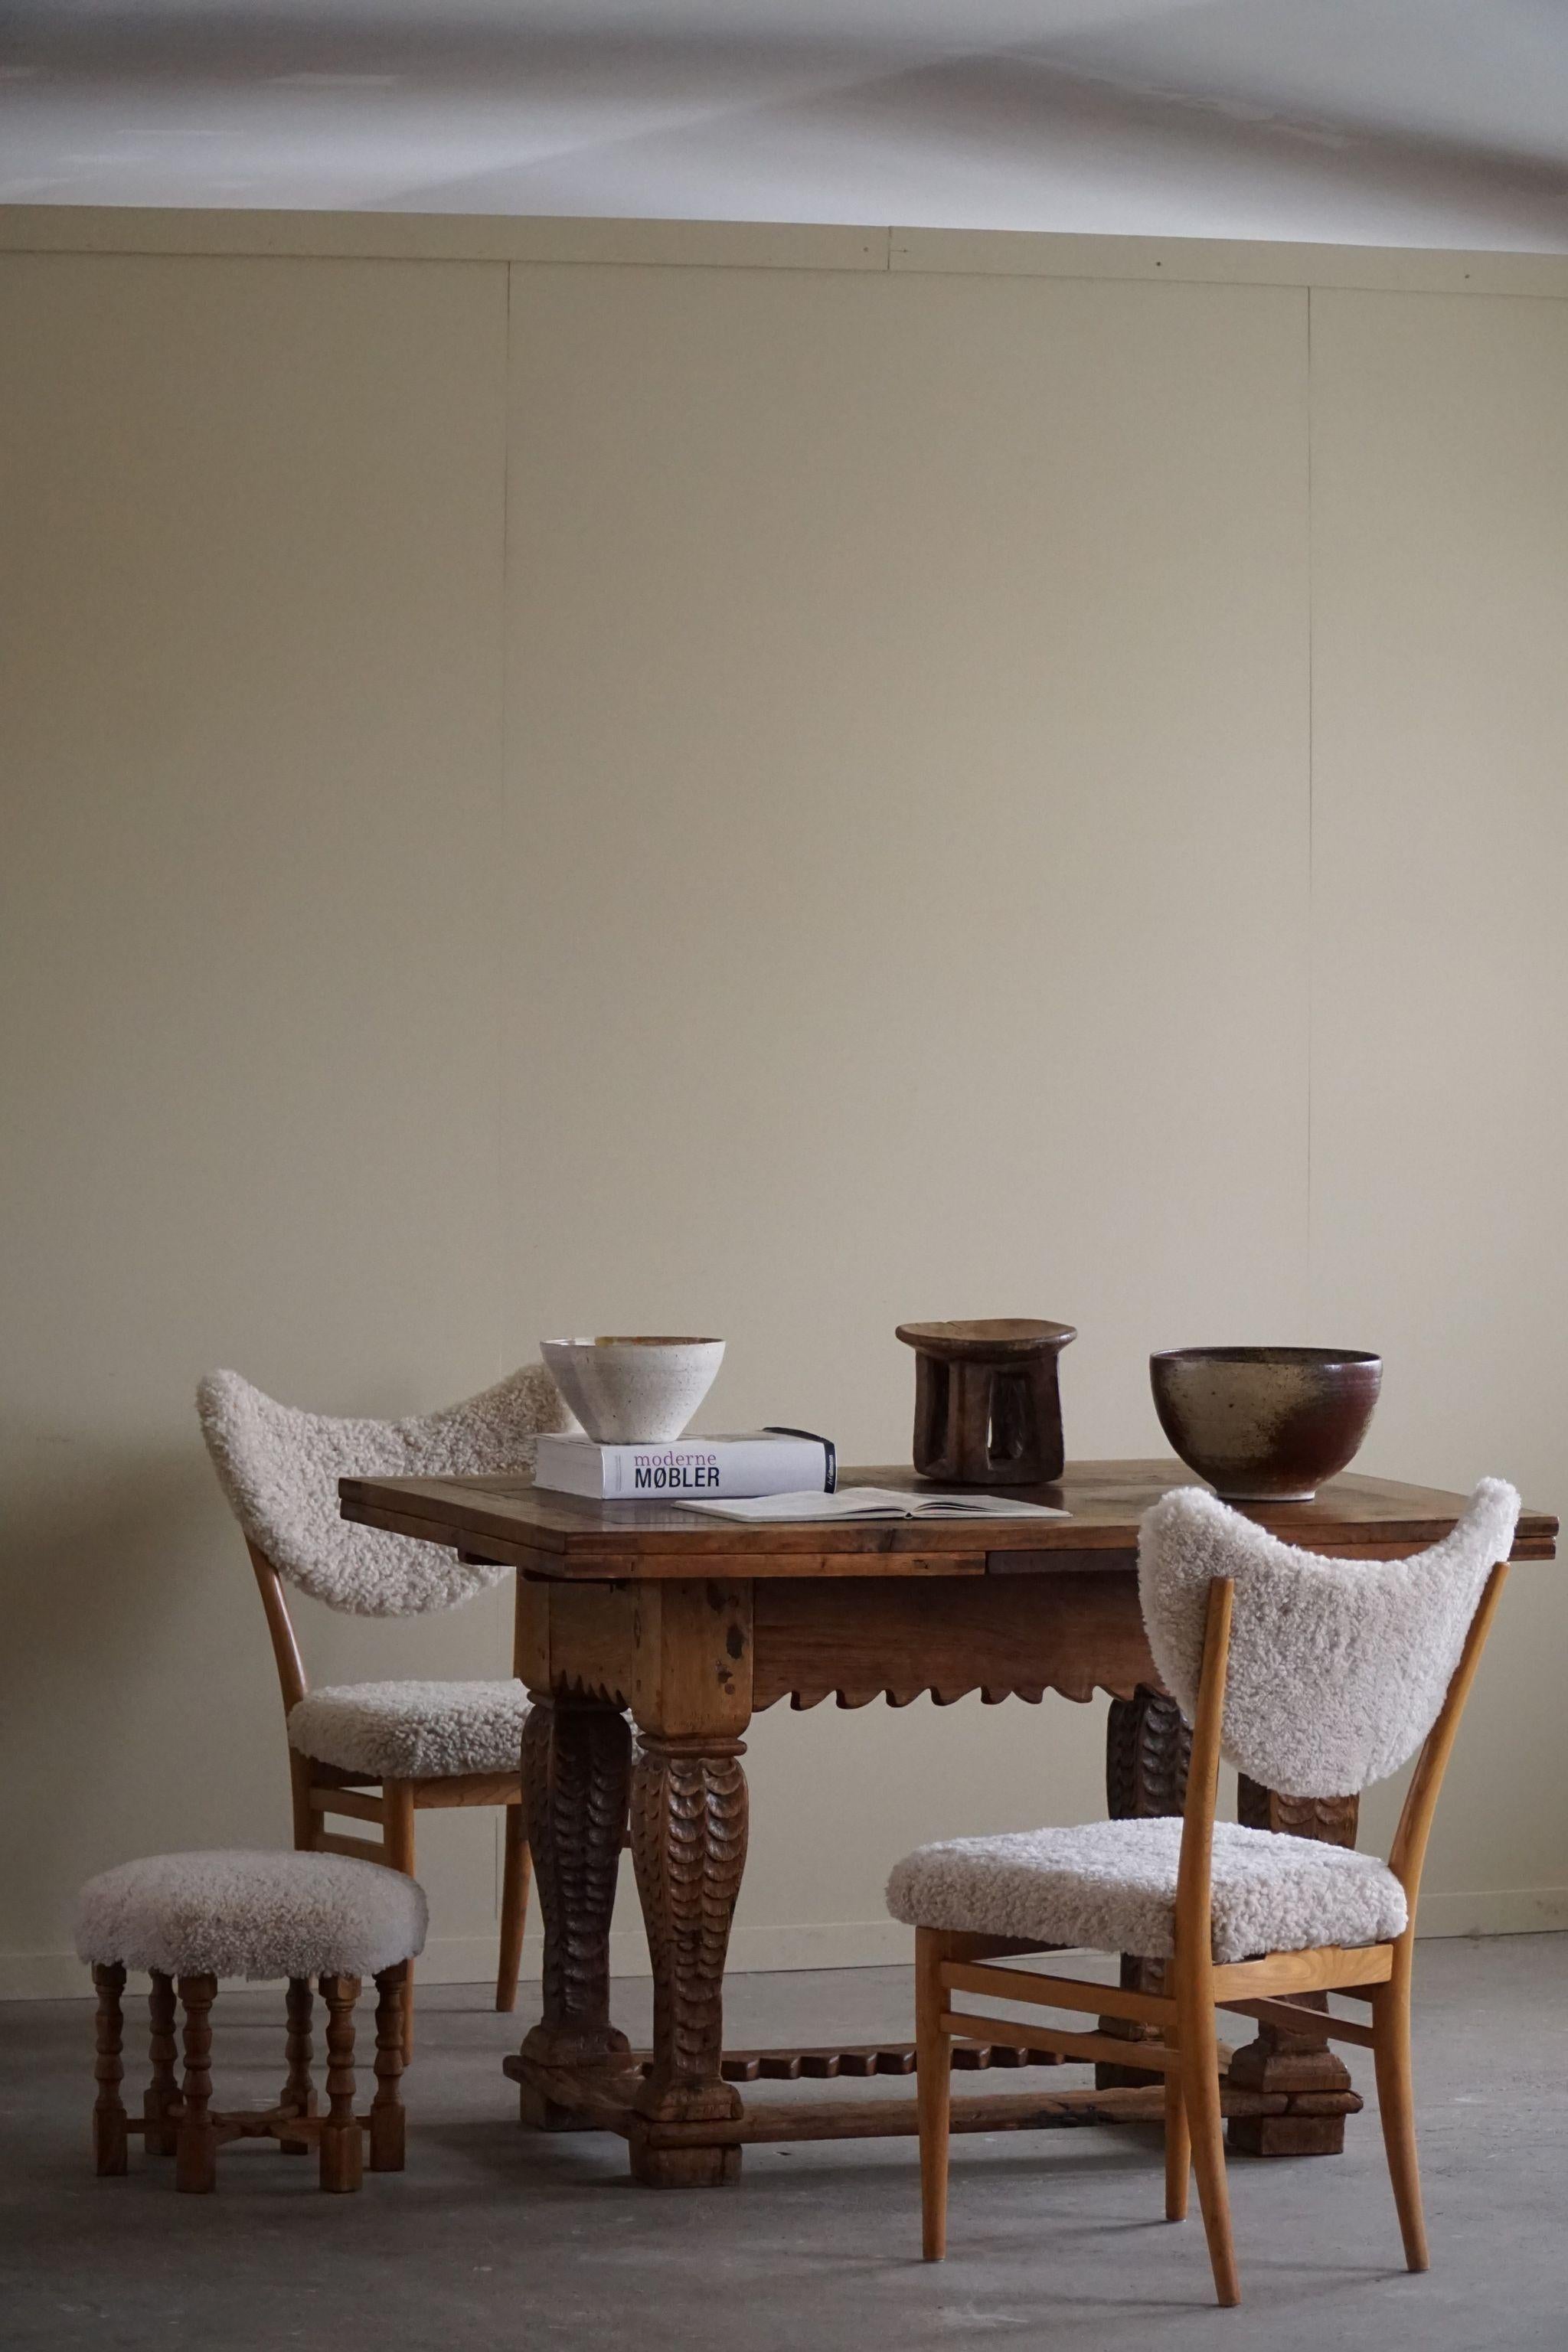 Cette table de bureau et de salle à manger de style baroque ancien, fabriquée par un ébéniste danois qualifié au XIXe siècle, respire l'élégance intemporelle et l'attrait de la modernité. Le bois de chêne robuste est magnifiquement vieilli, ajoutant